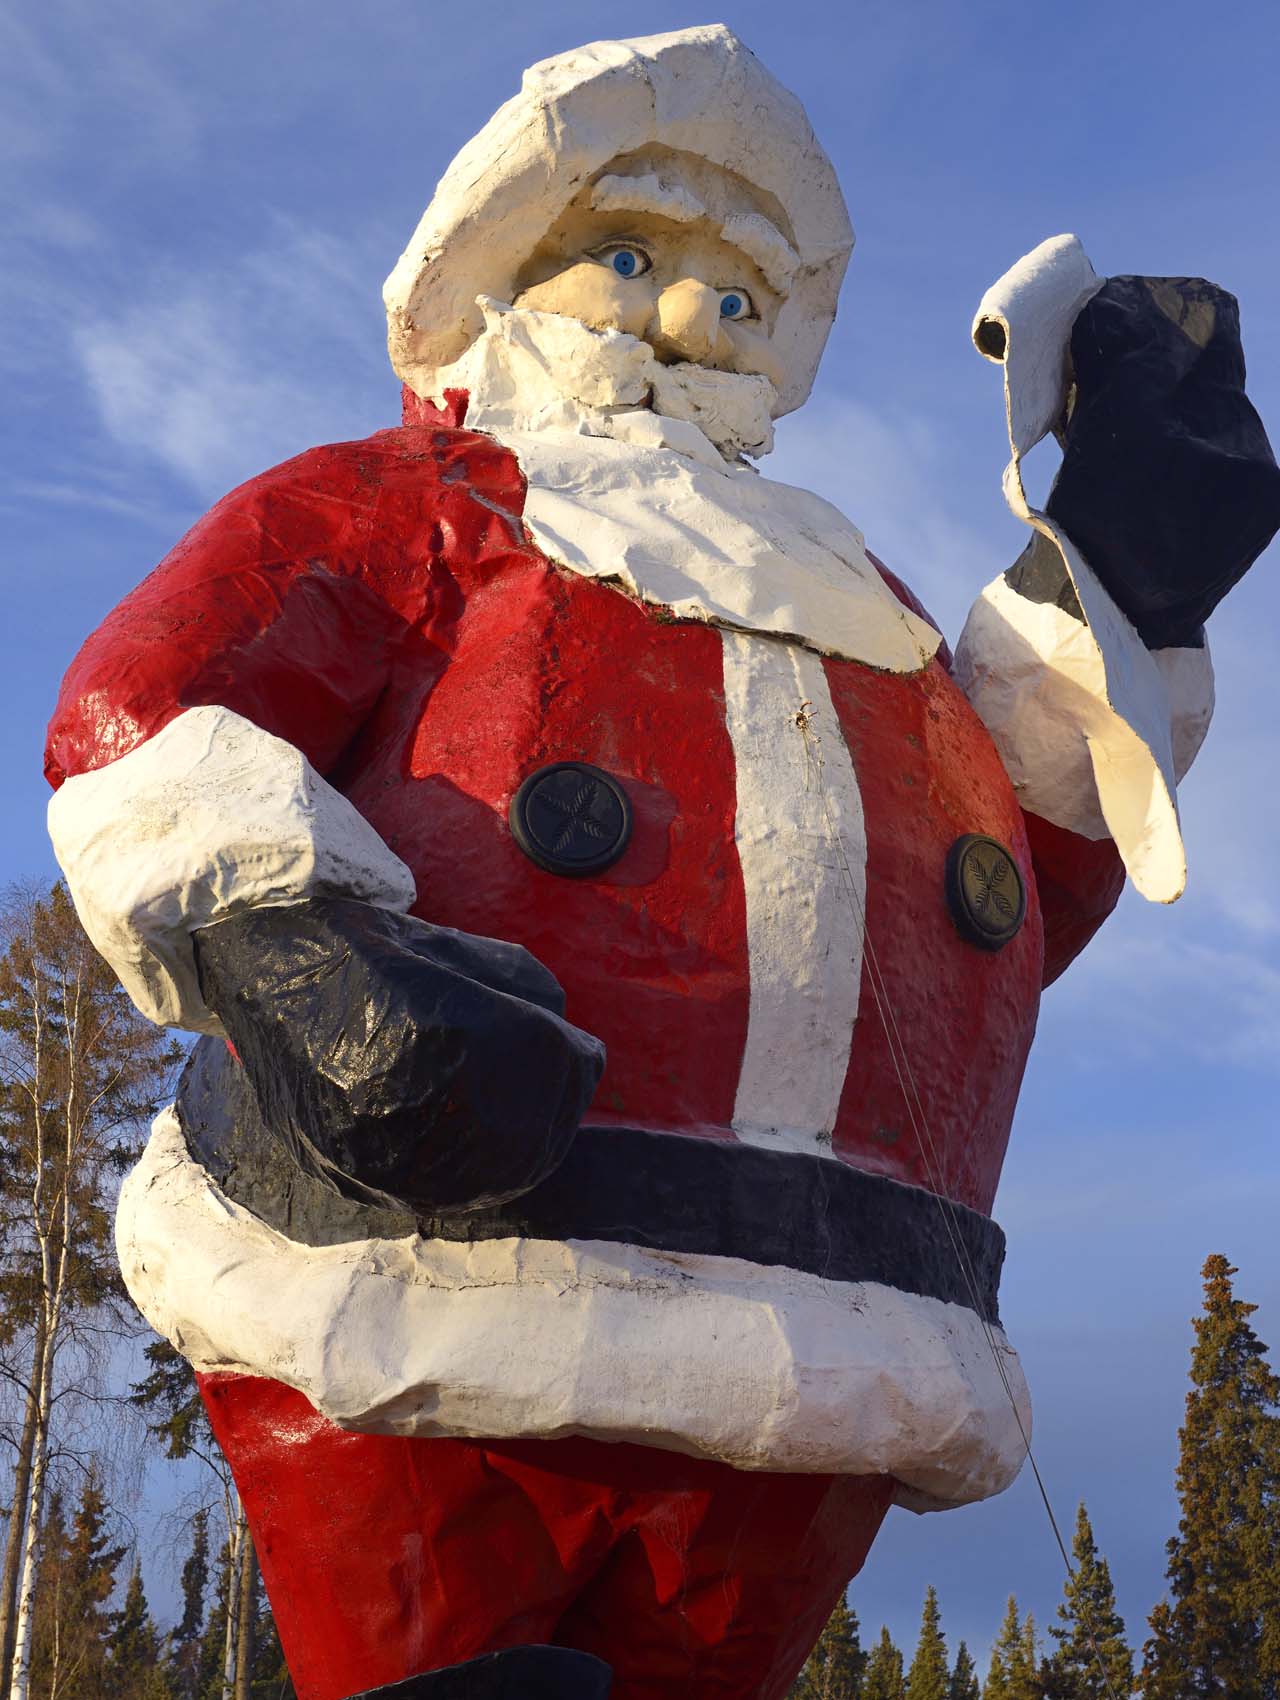 Giant Santa Claus statue at Santaland in North Pole, Alaska